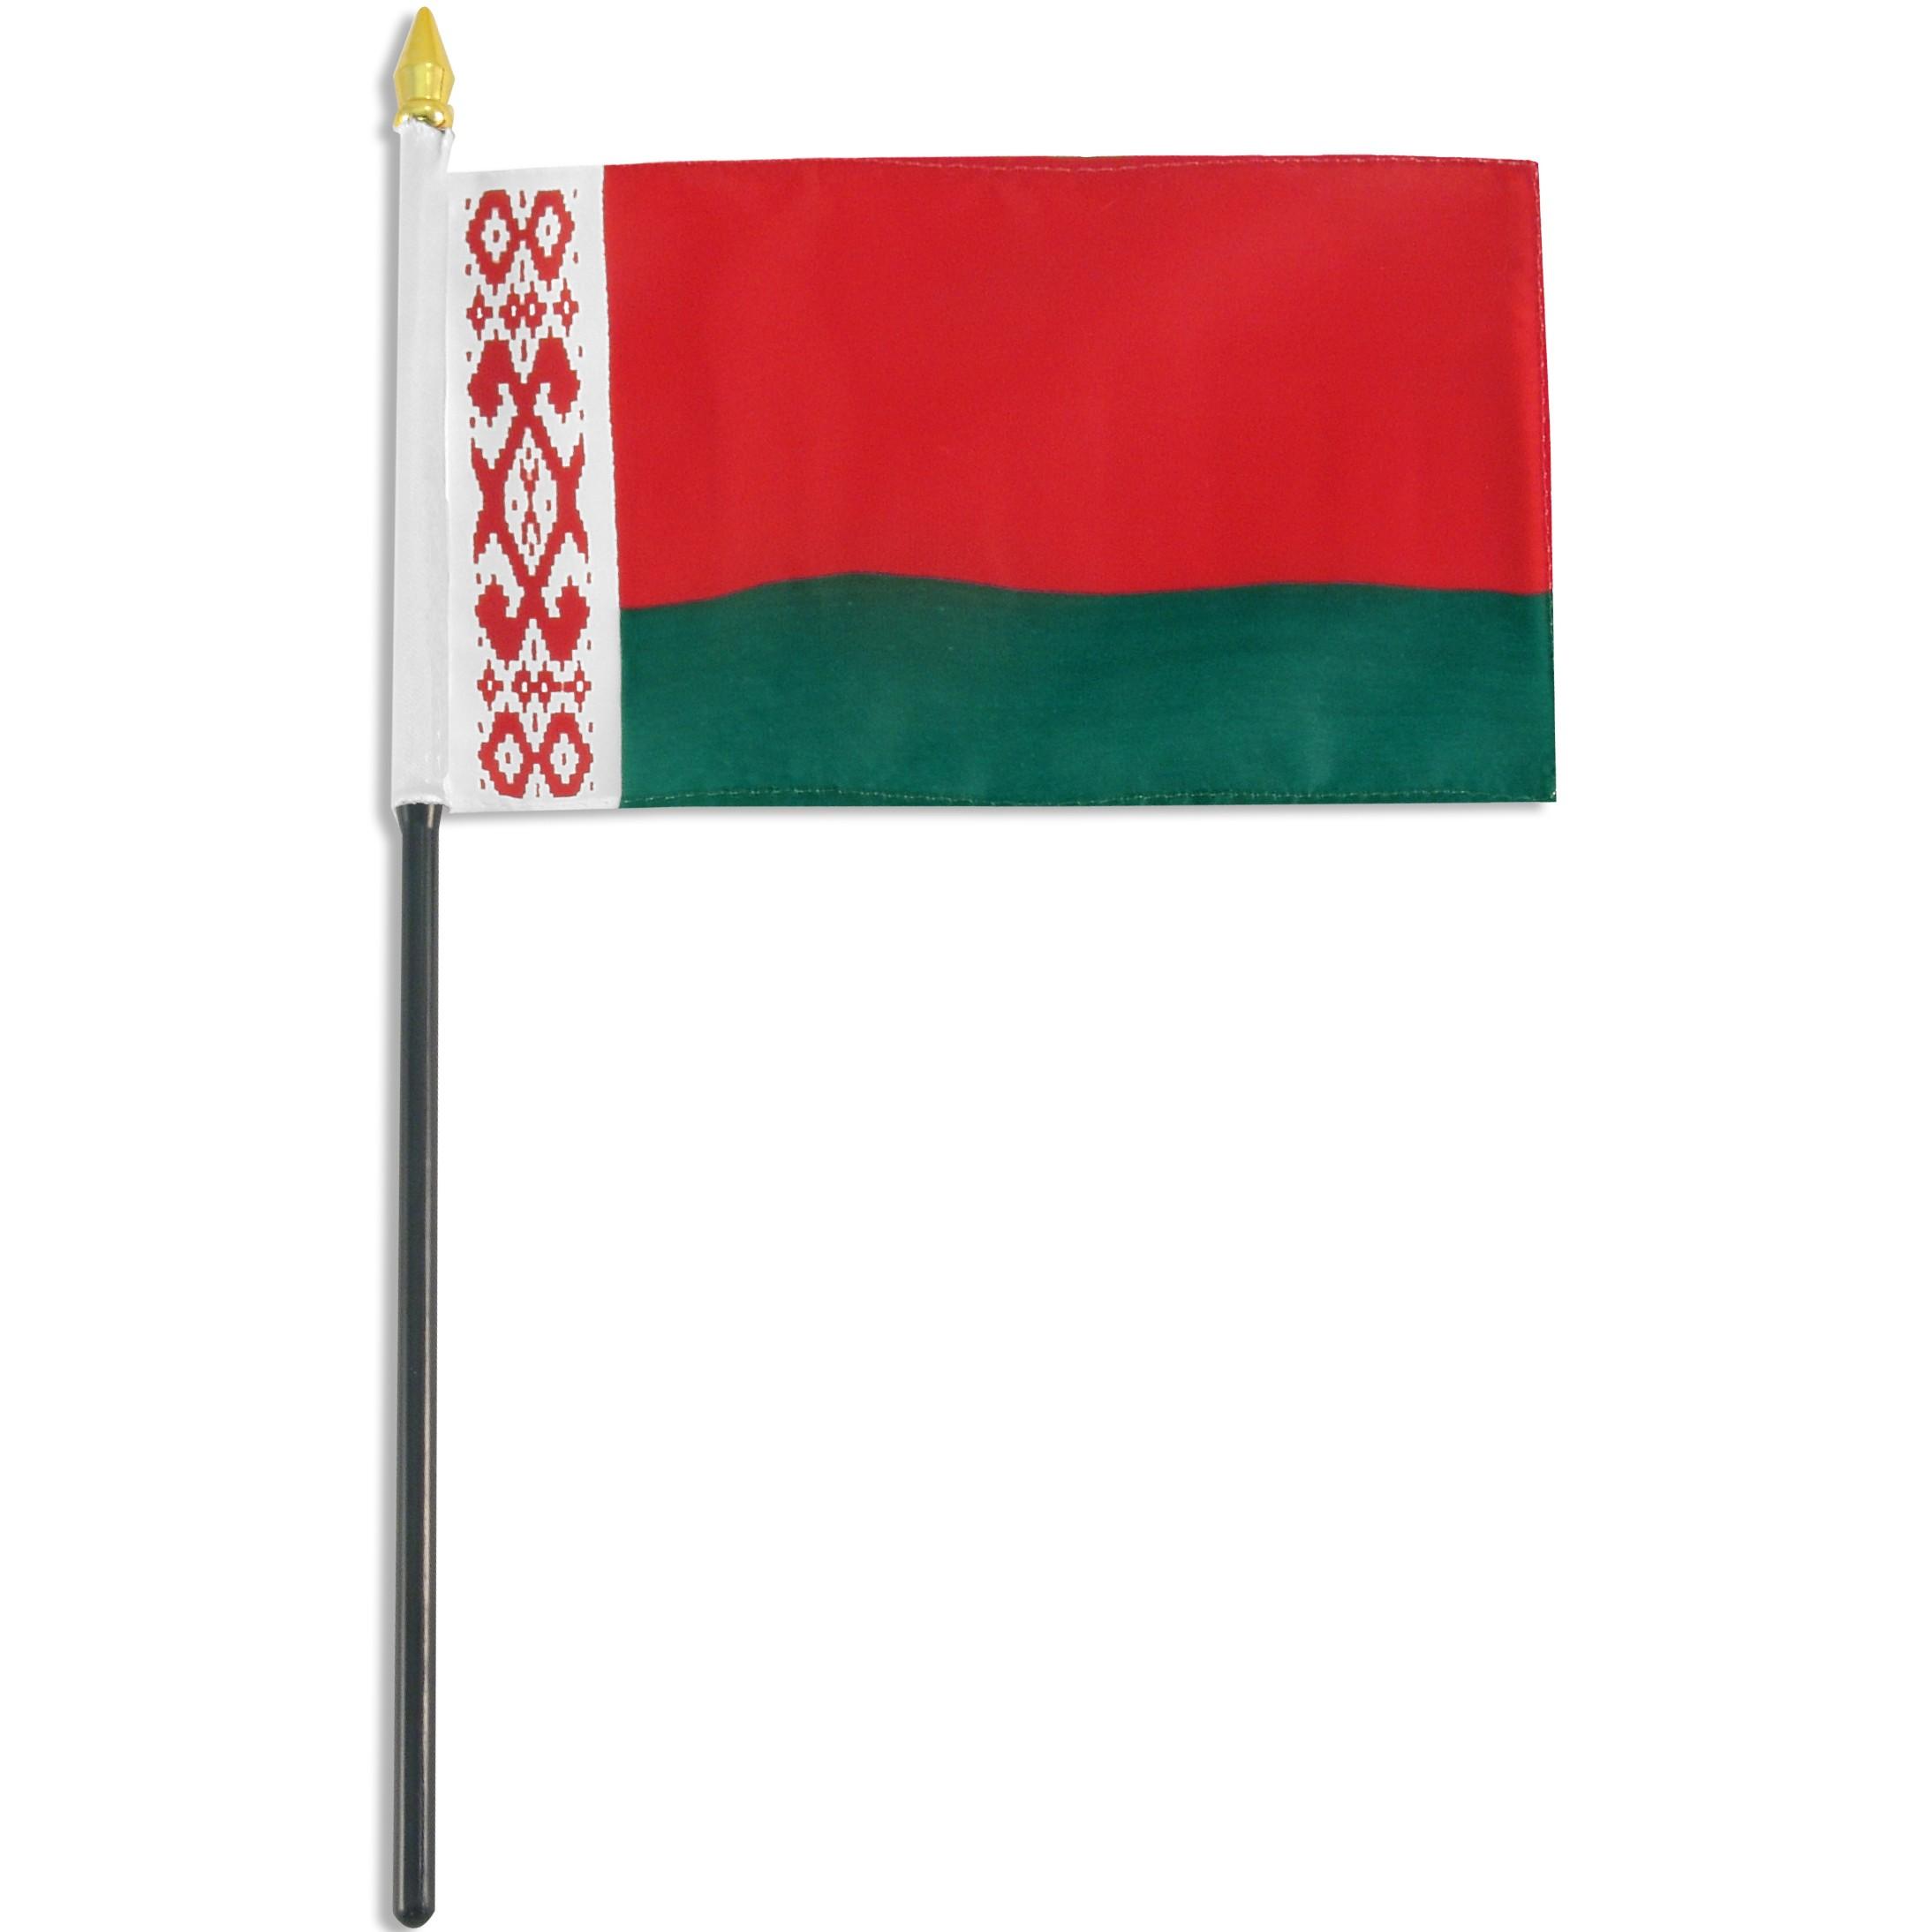 belarus flag Large Image